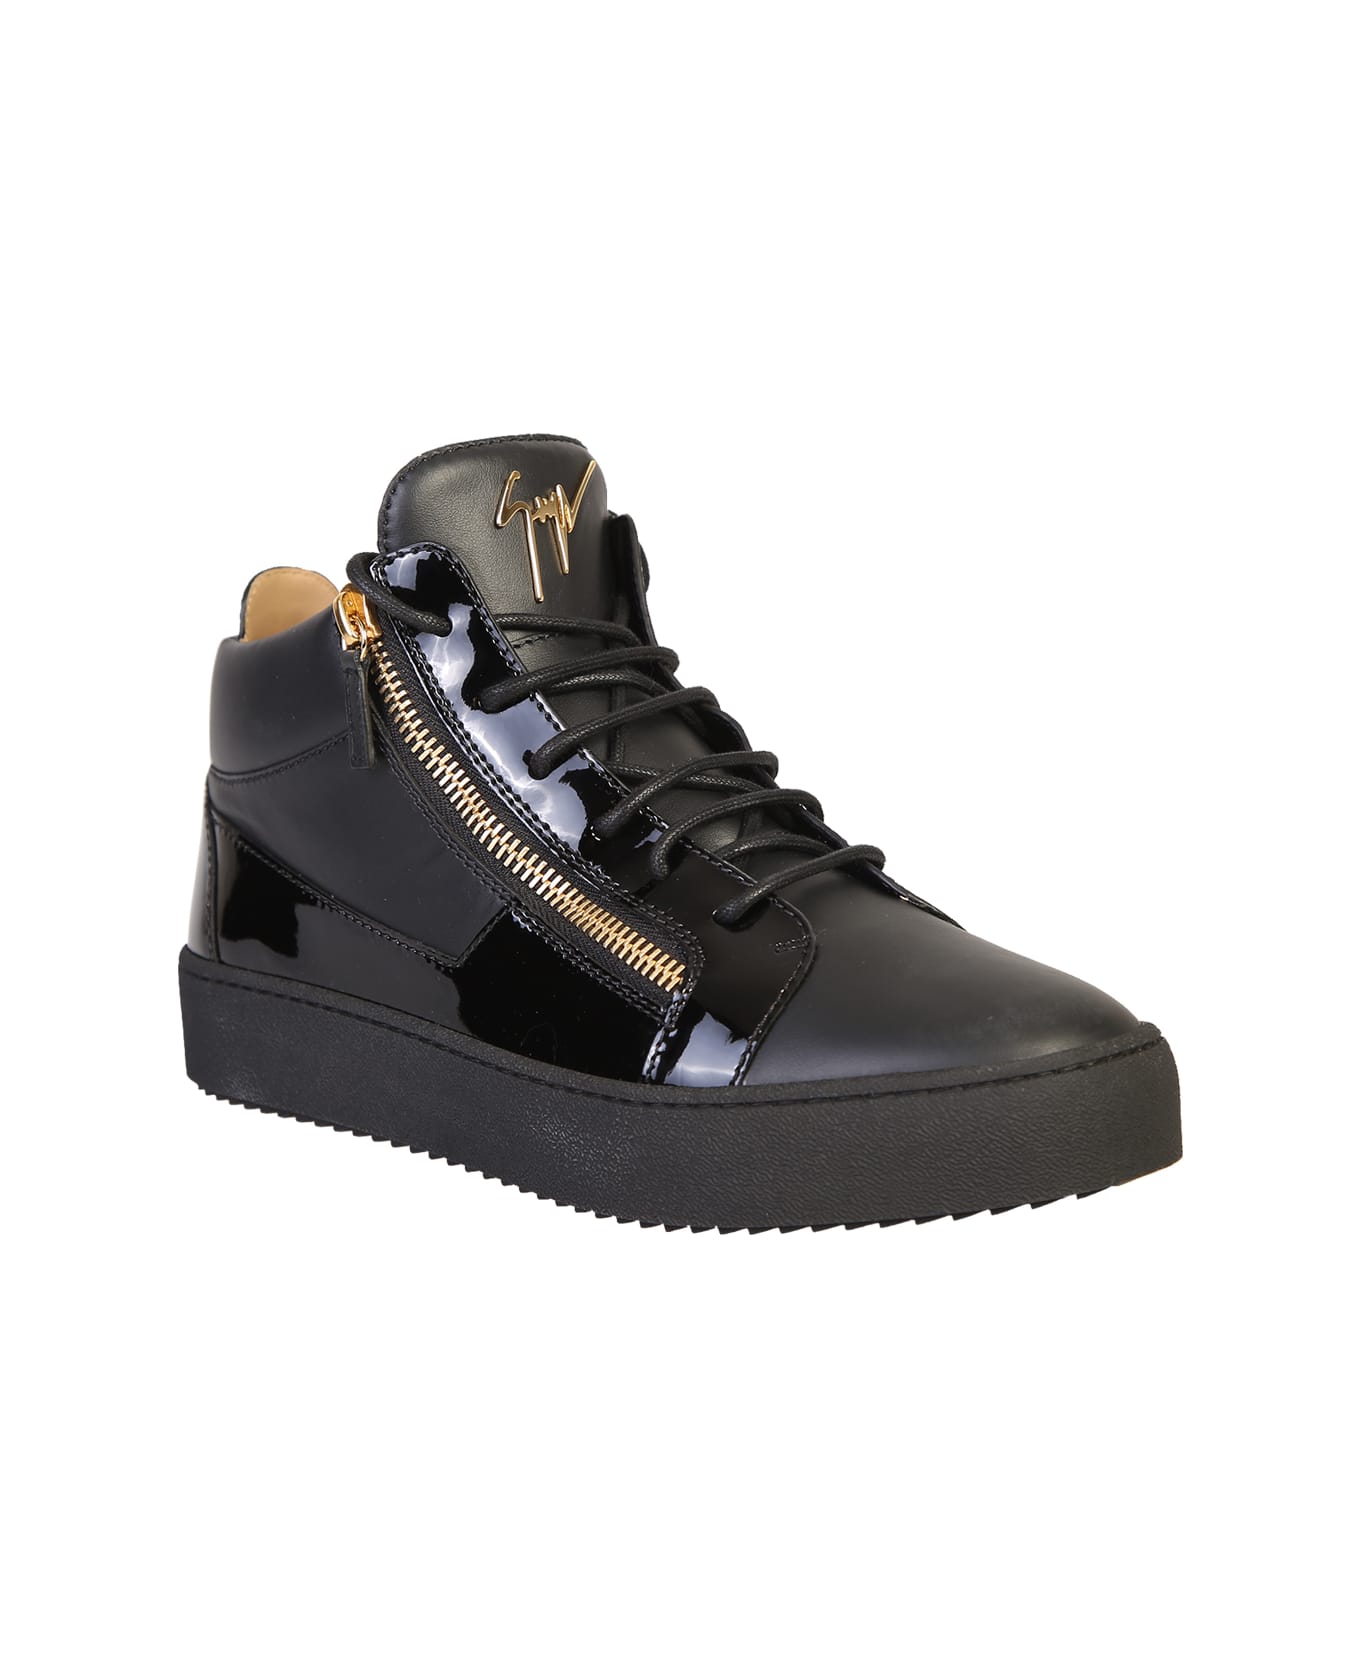 Giuseppe Zanotti Branded Sneakers - Black スニーカー